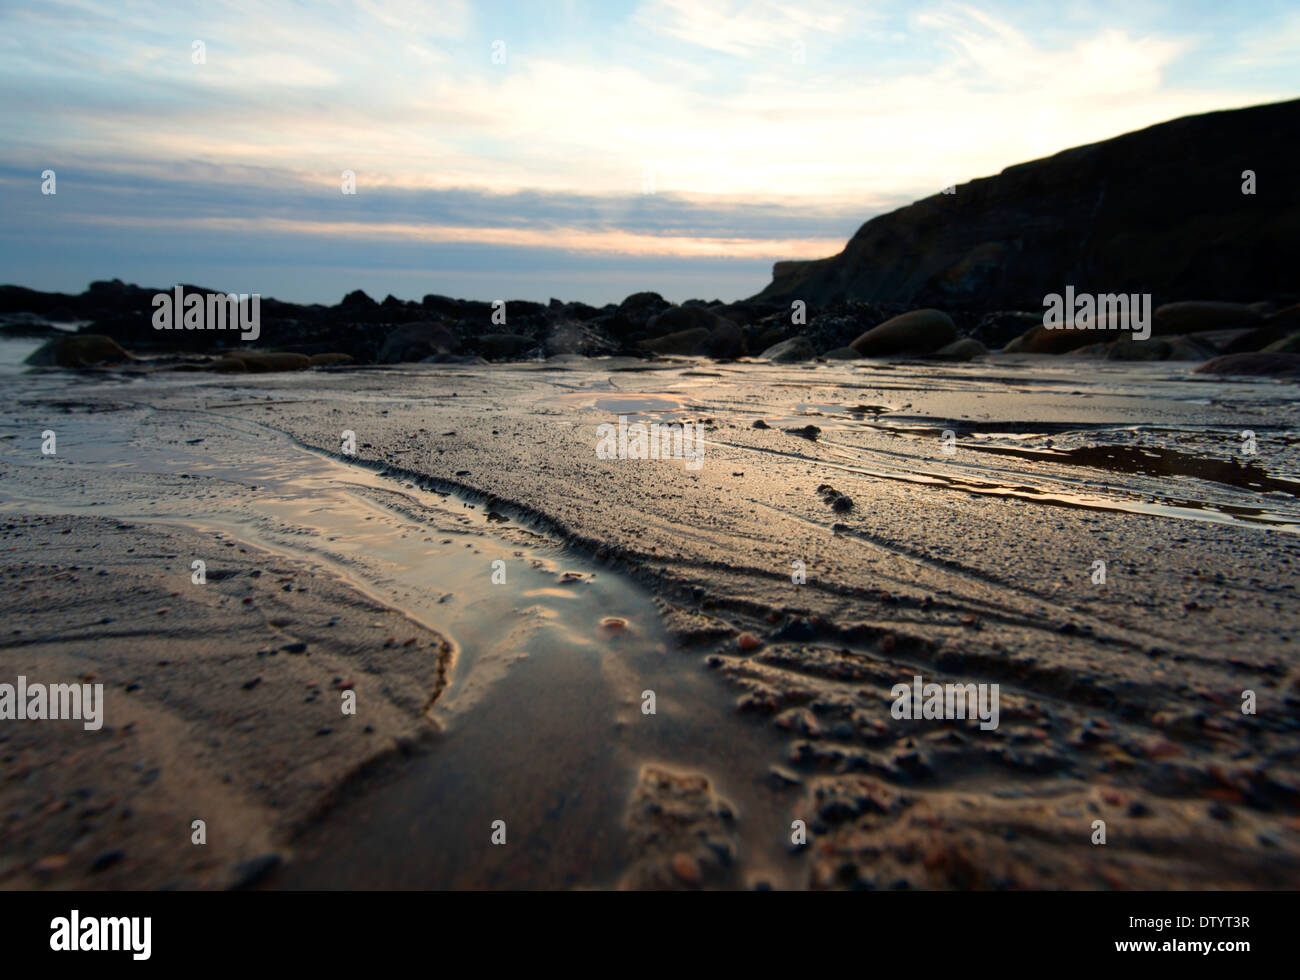 Lumière dorée dans les patterns dans le sable à Saltwick Bay Whitby, North Yorkshire Angleterre UK Banque D'Images